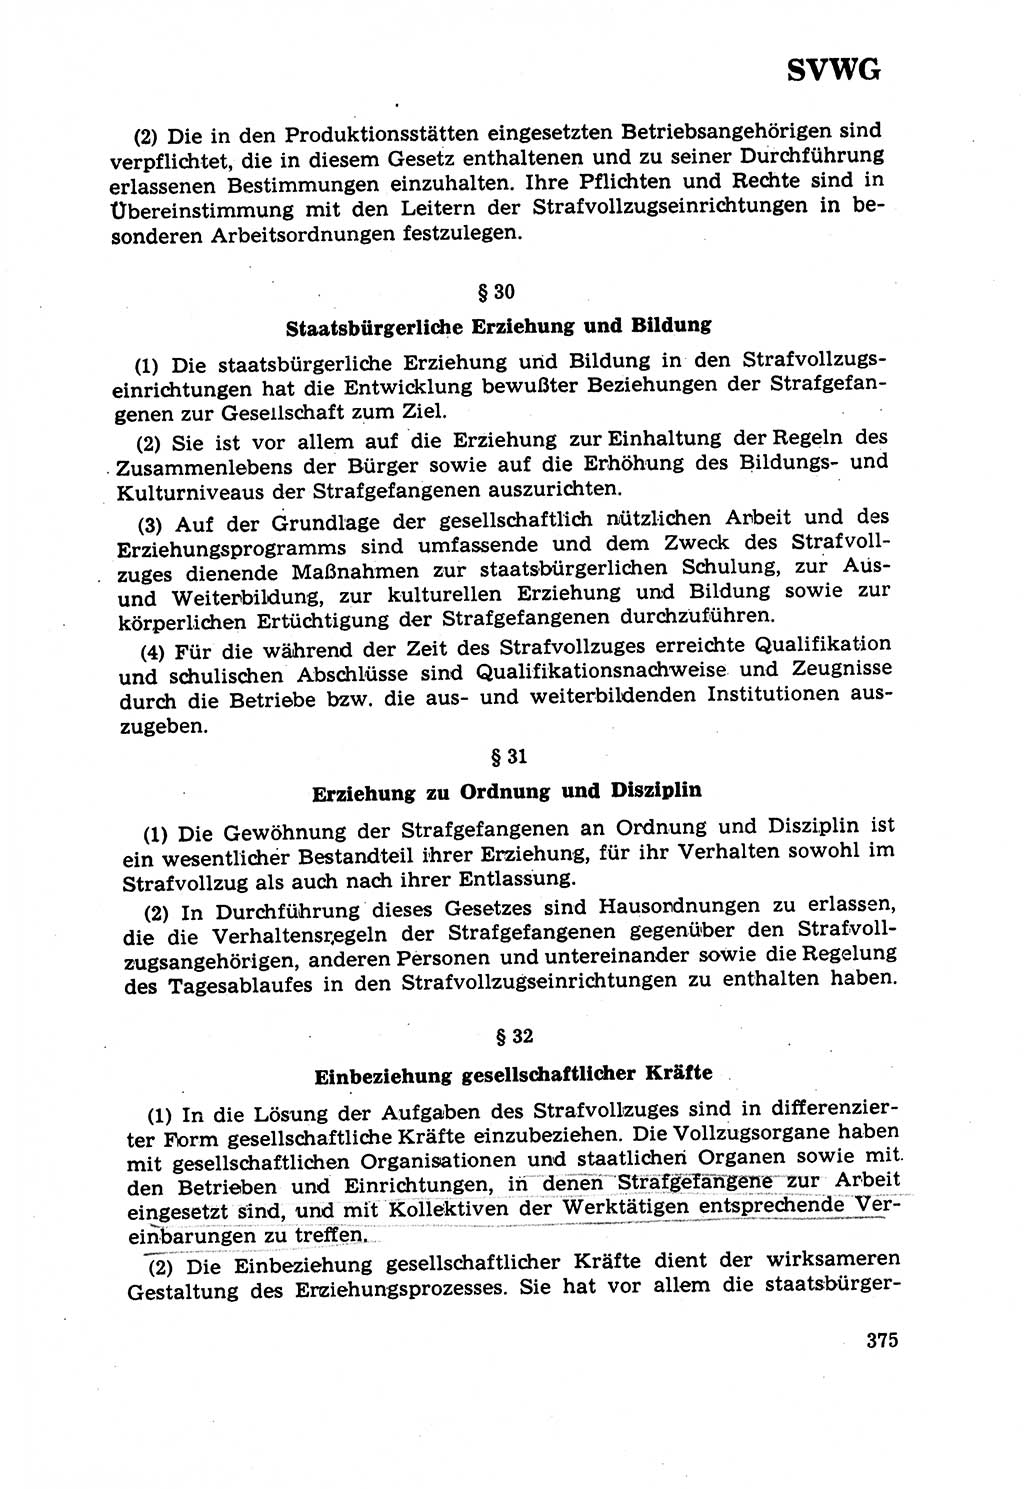 Strafrecht [Deutsche Demokratische Republik (DDR)] 1968, Seite 375 (Strafr. DDR 1968, S. 375)